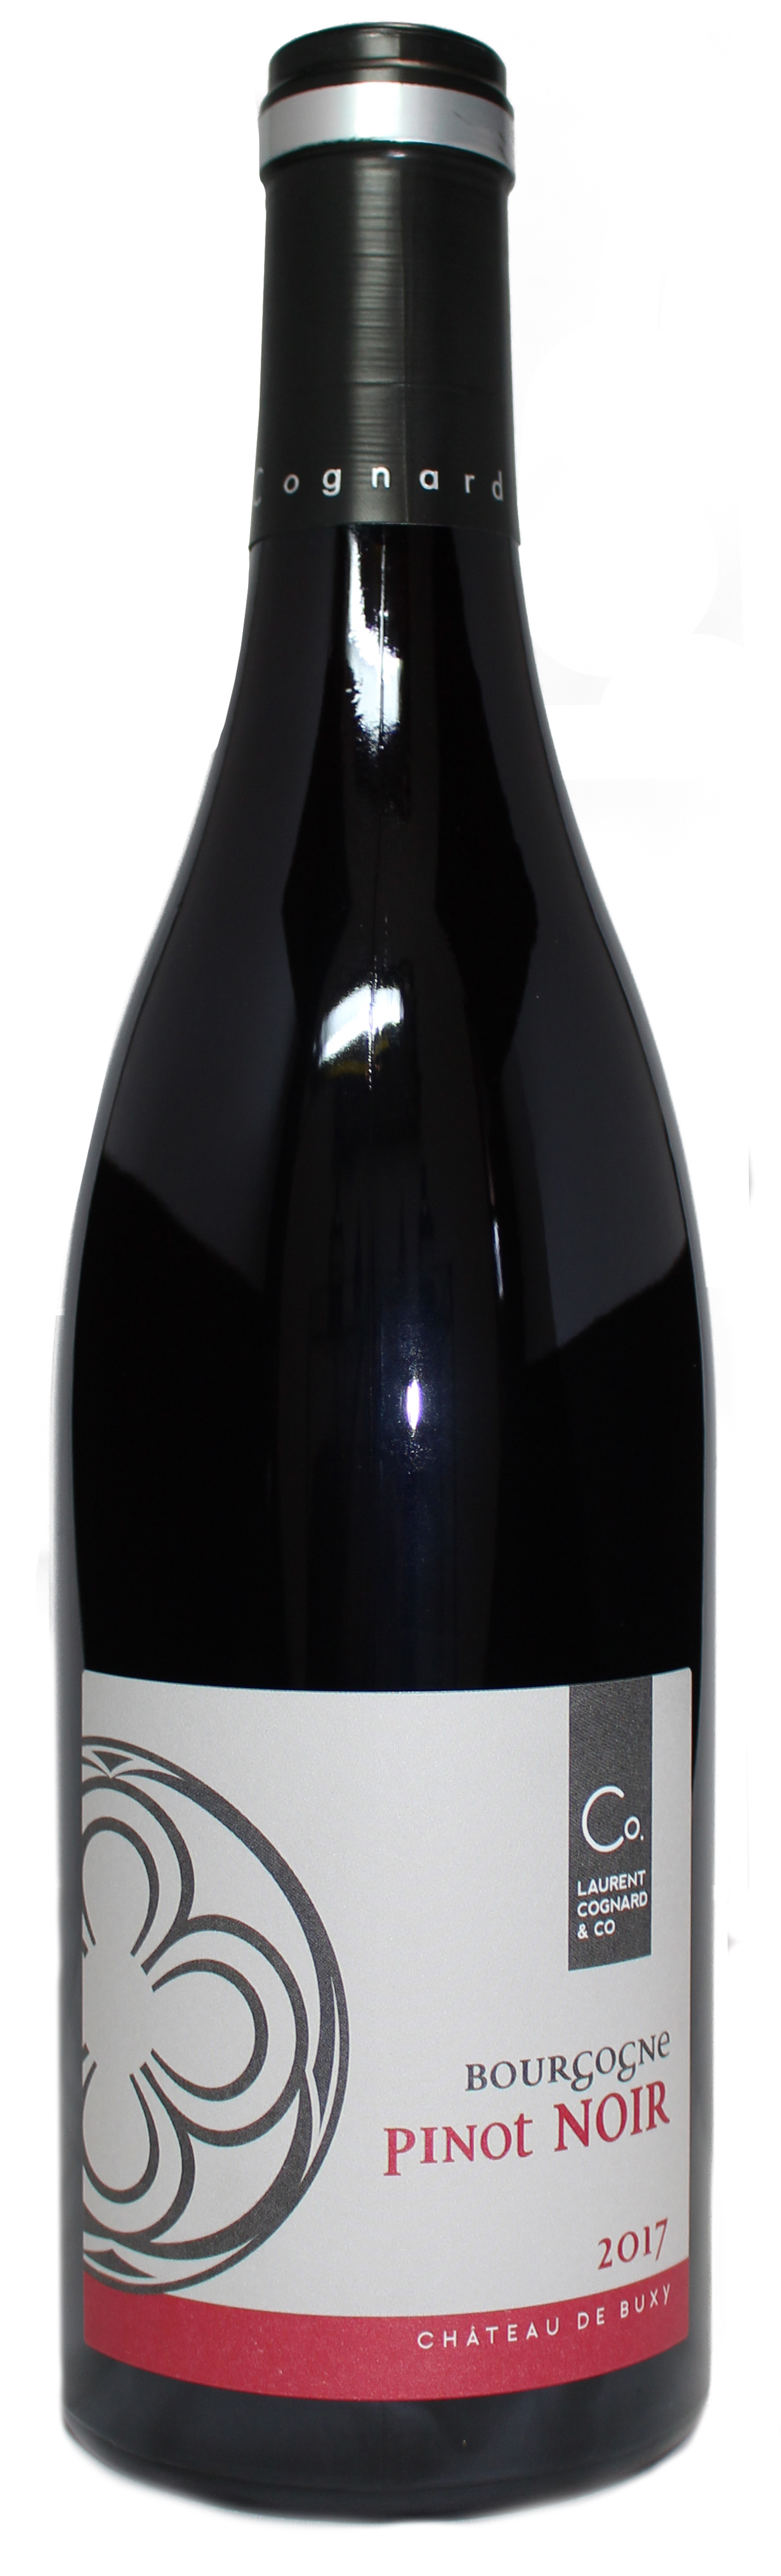 Domaine Laurent Cognard Bourgogne Pinot Noir 2017 750ml